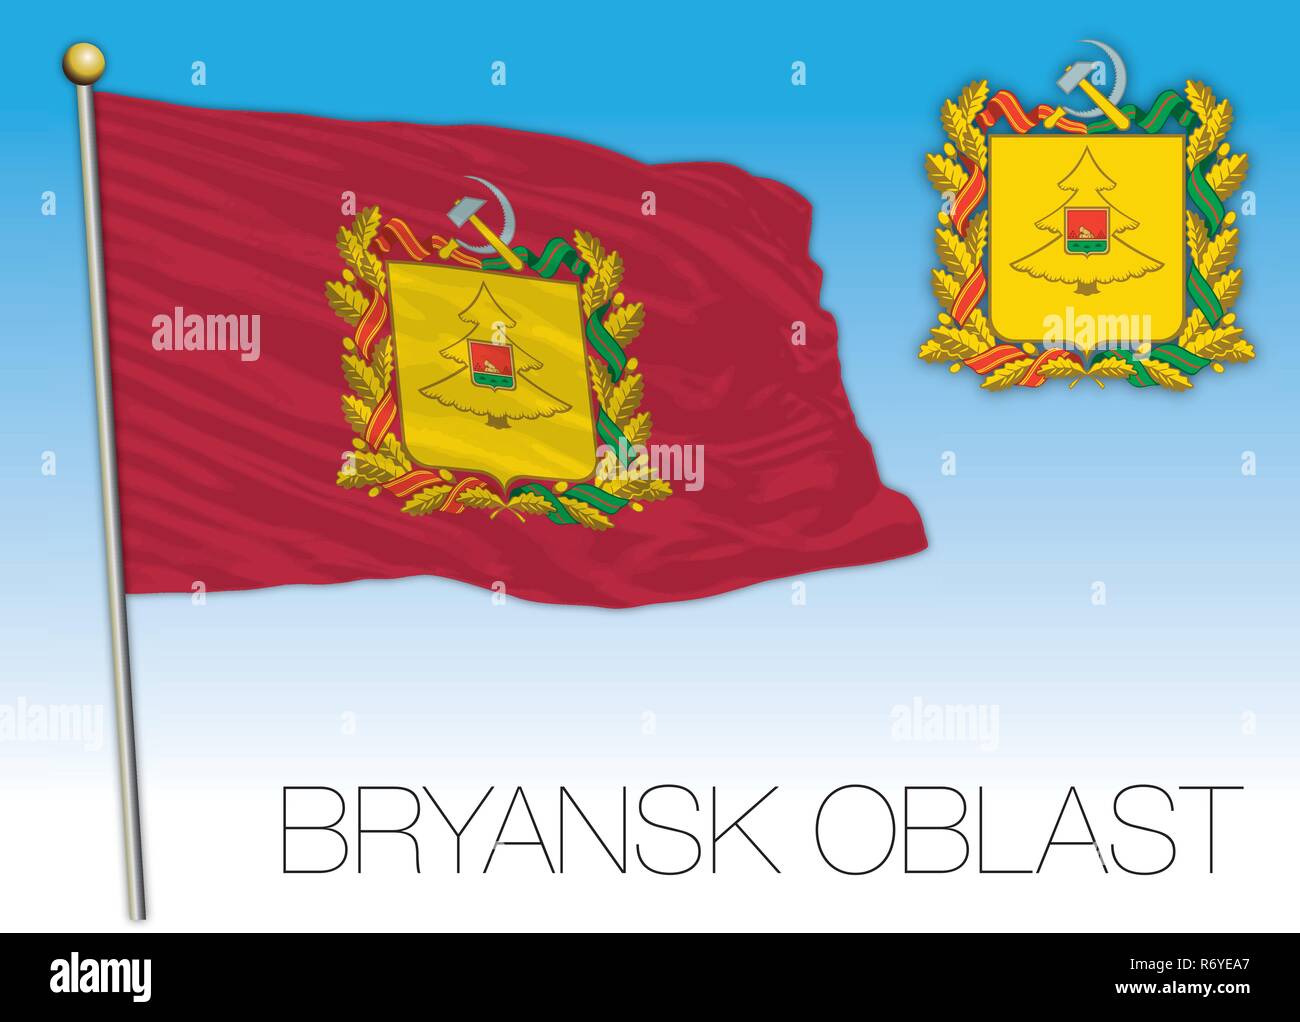 Bryansk заболещник флаг